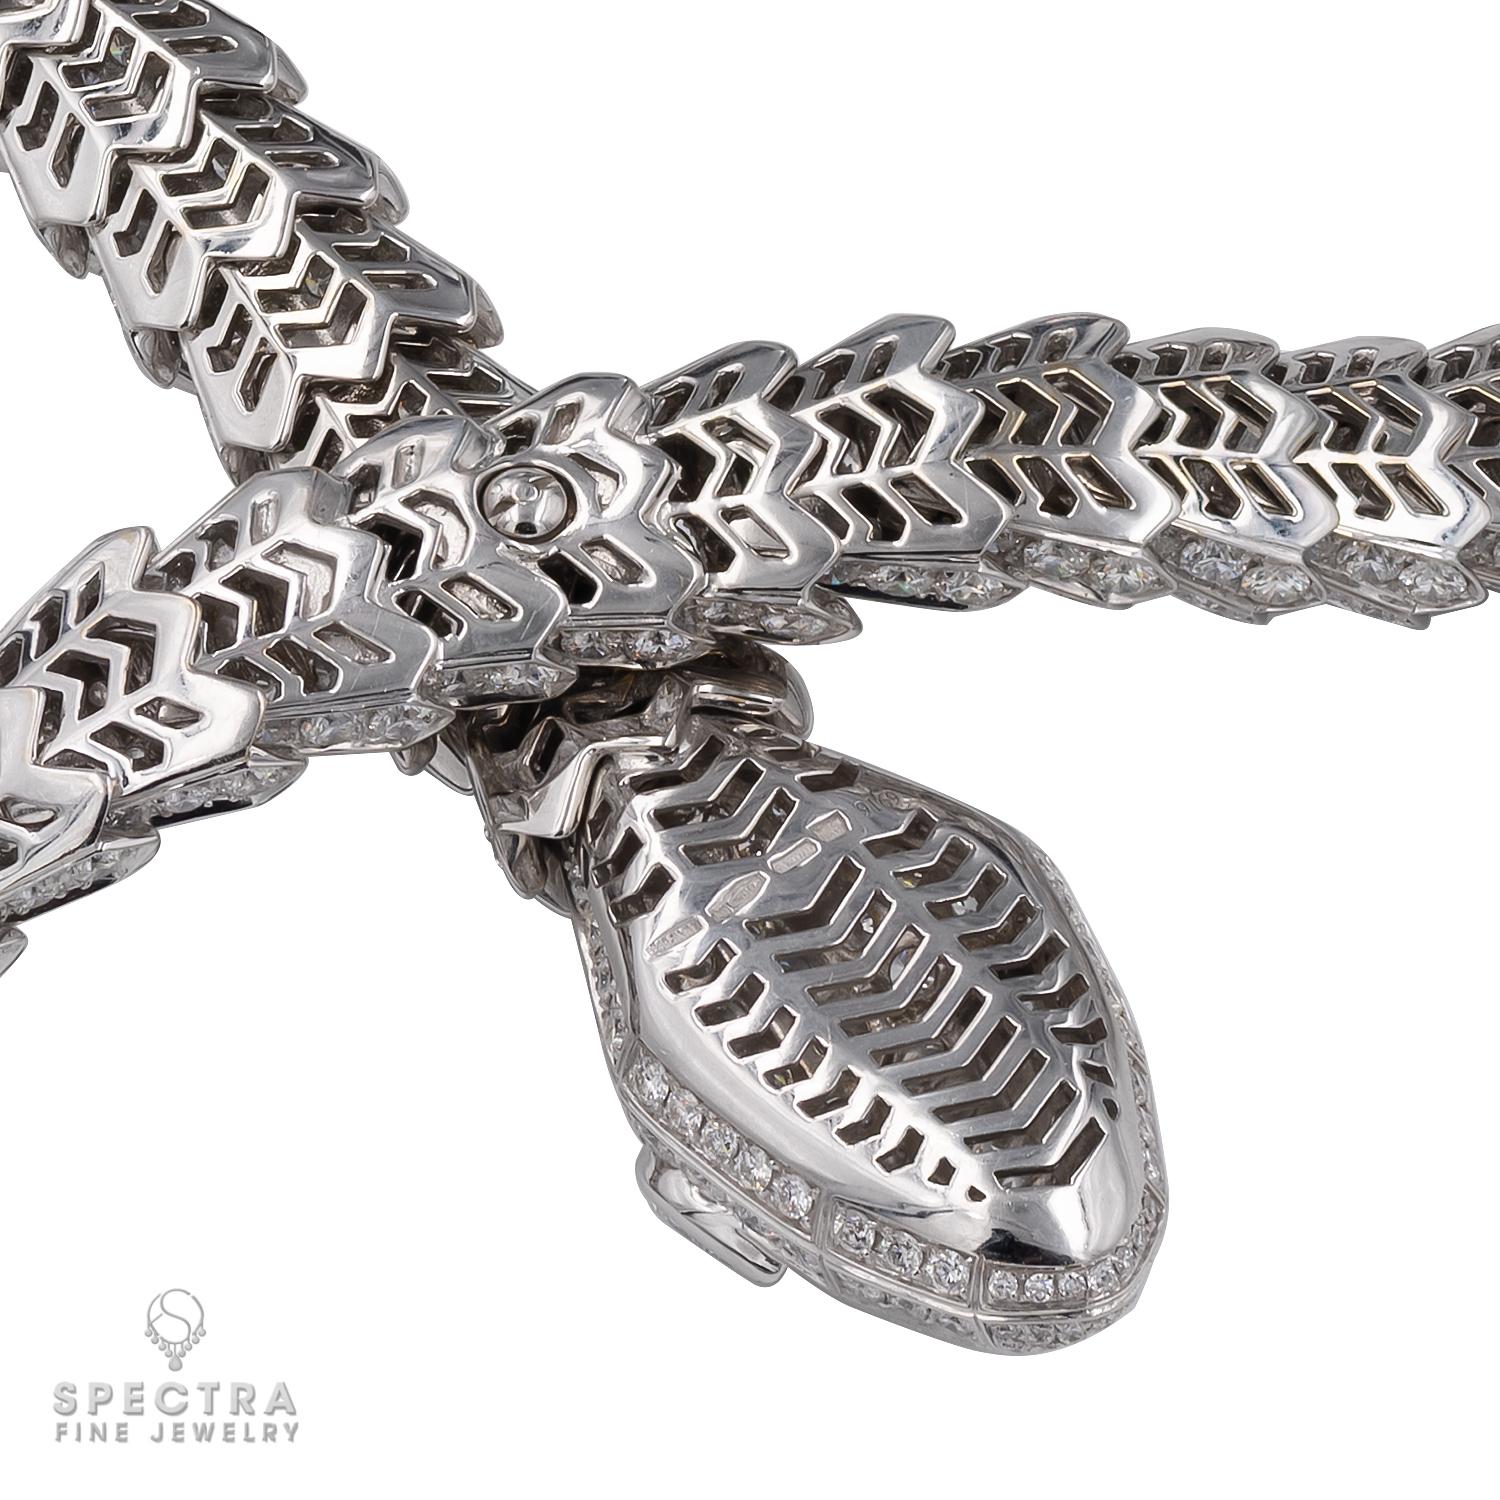 bulgari snake necklace